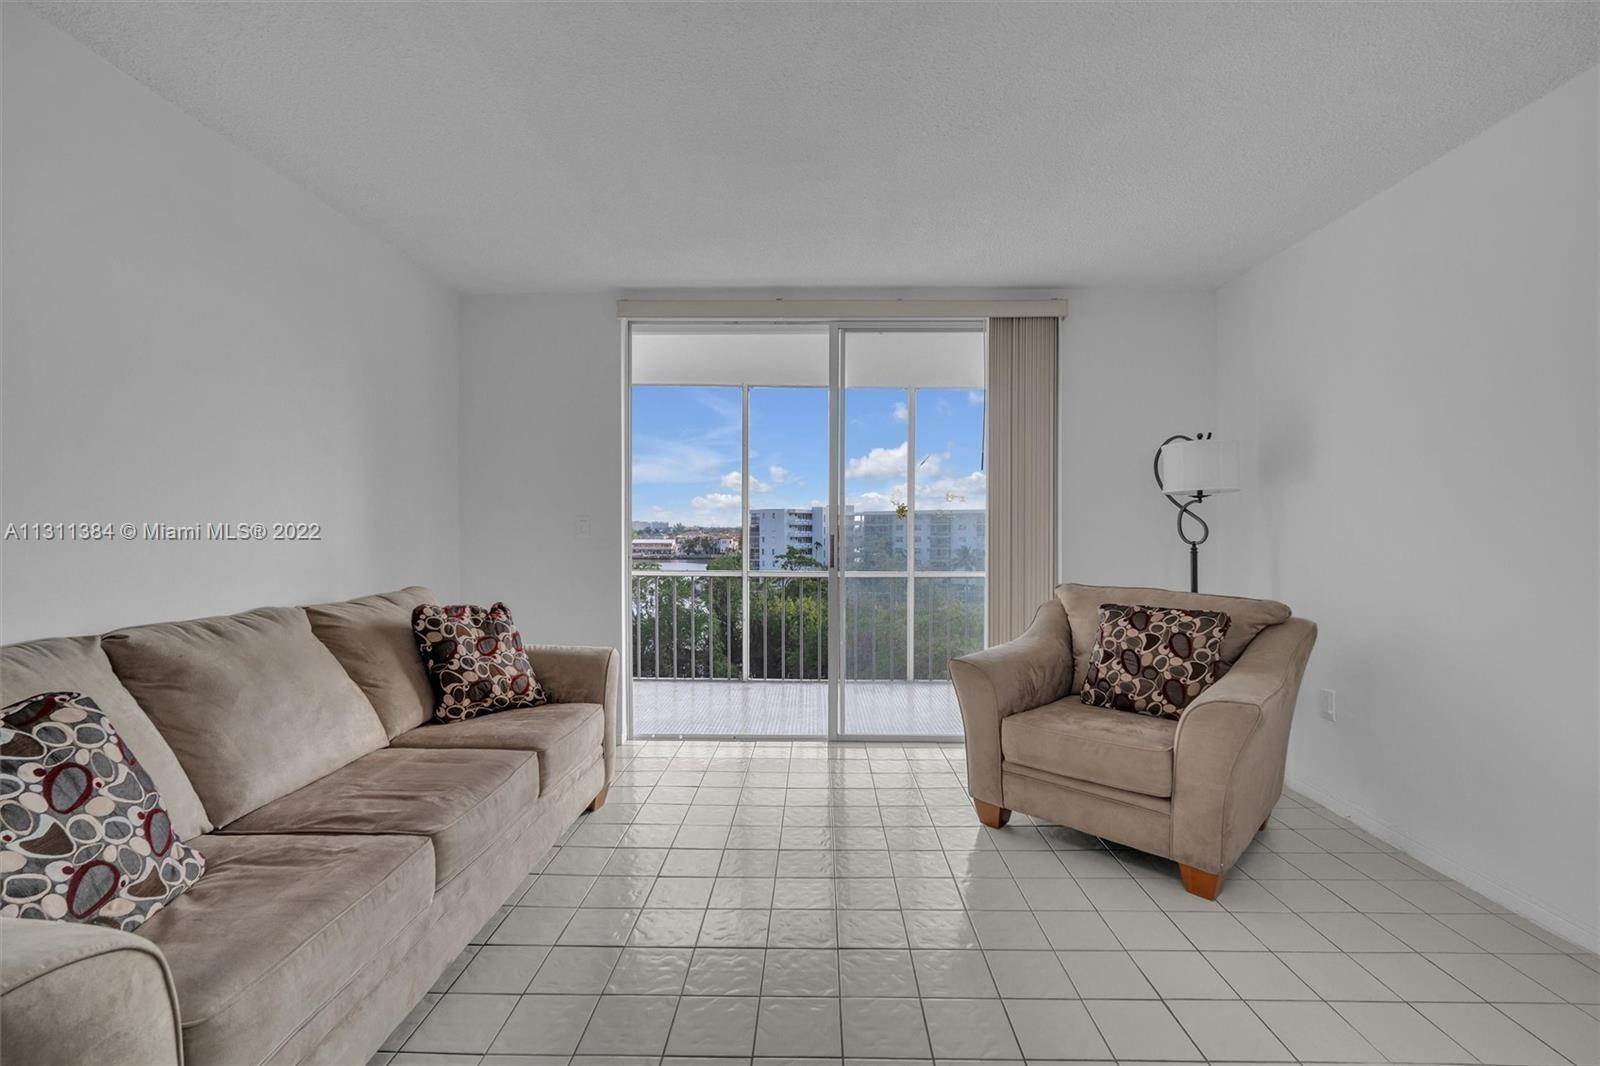 3. Condominium for Sale at Aventura, FL 33160